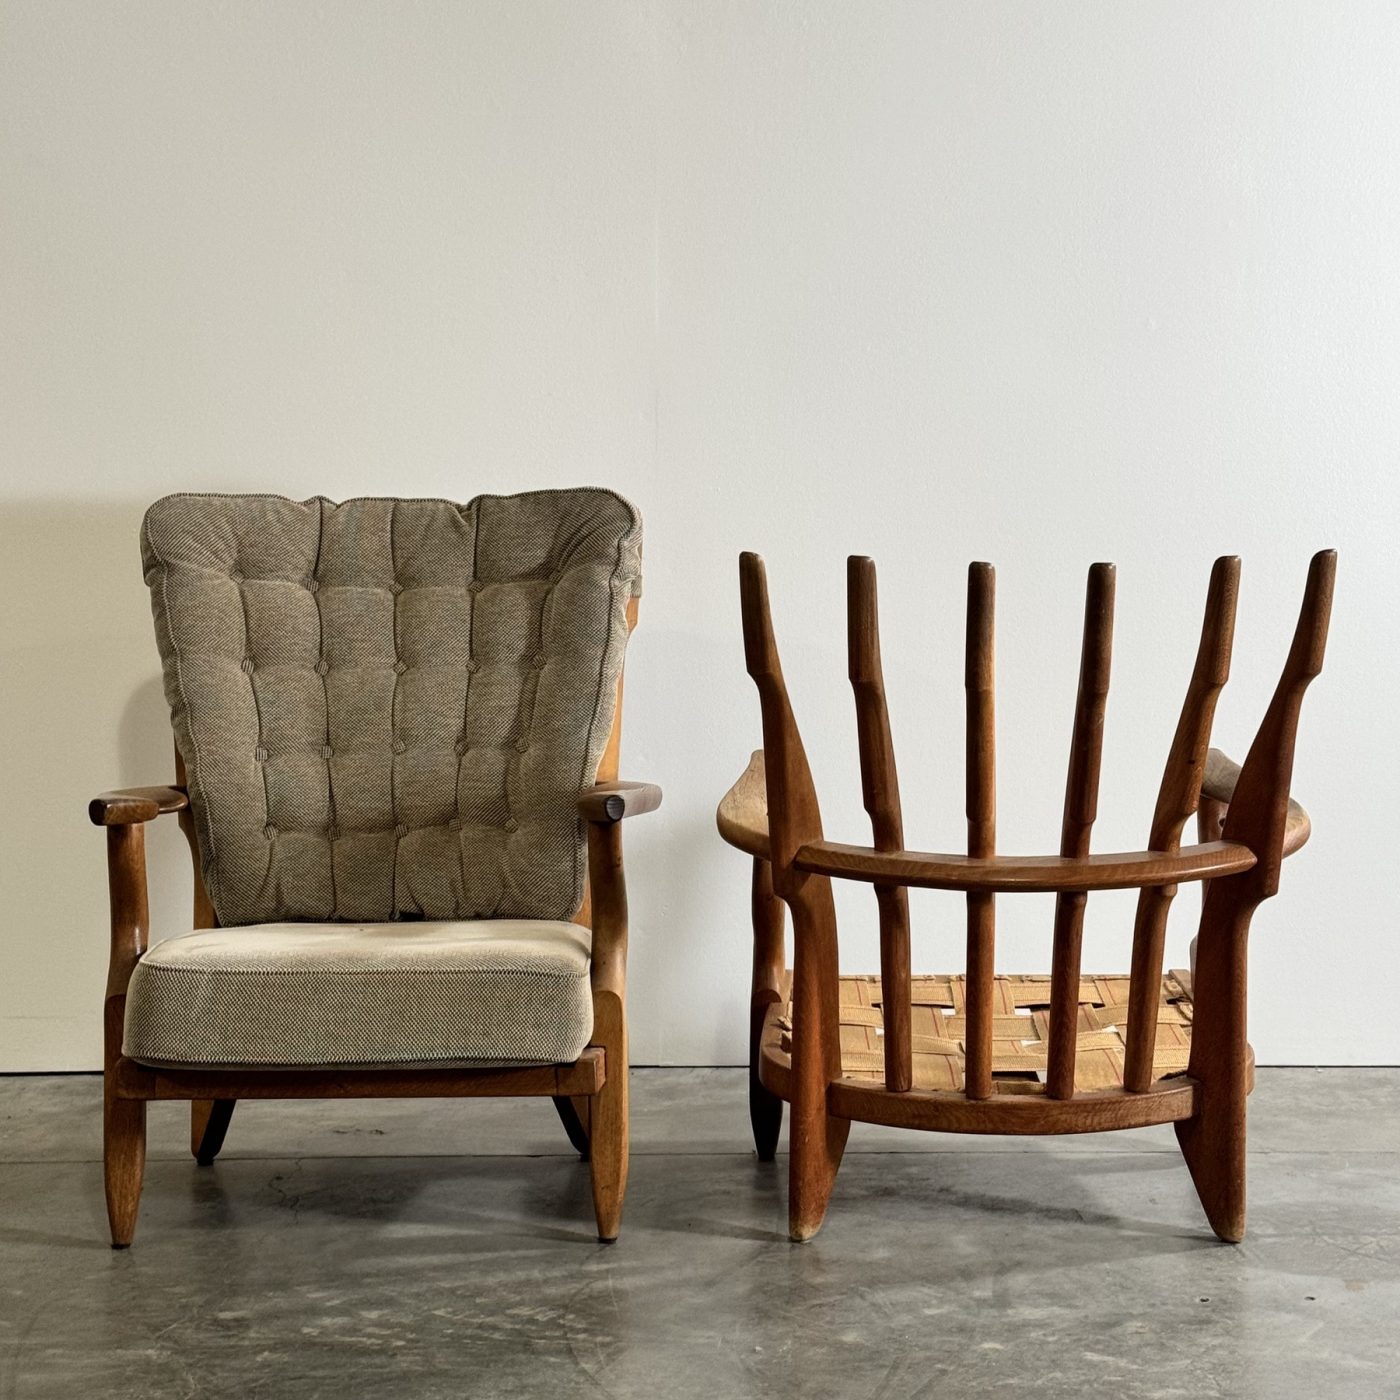 objet-vagabond-guillerme-armchairs0006